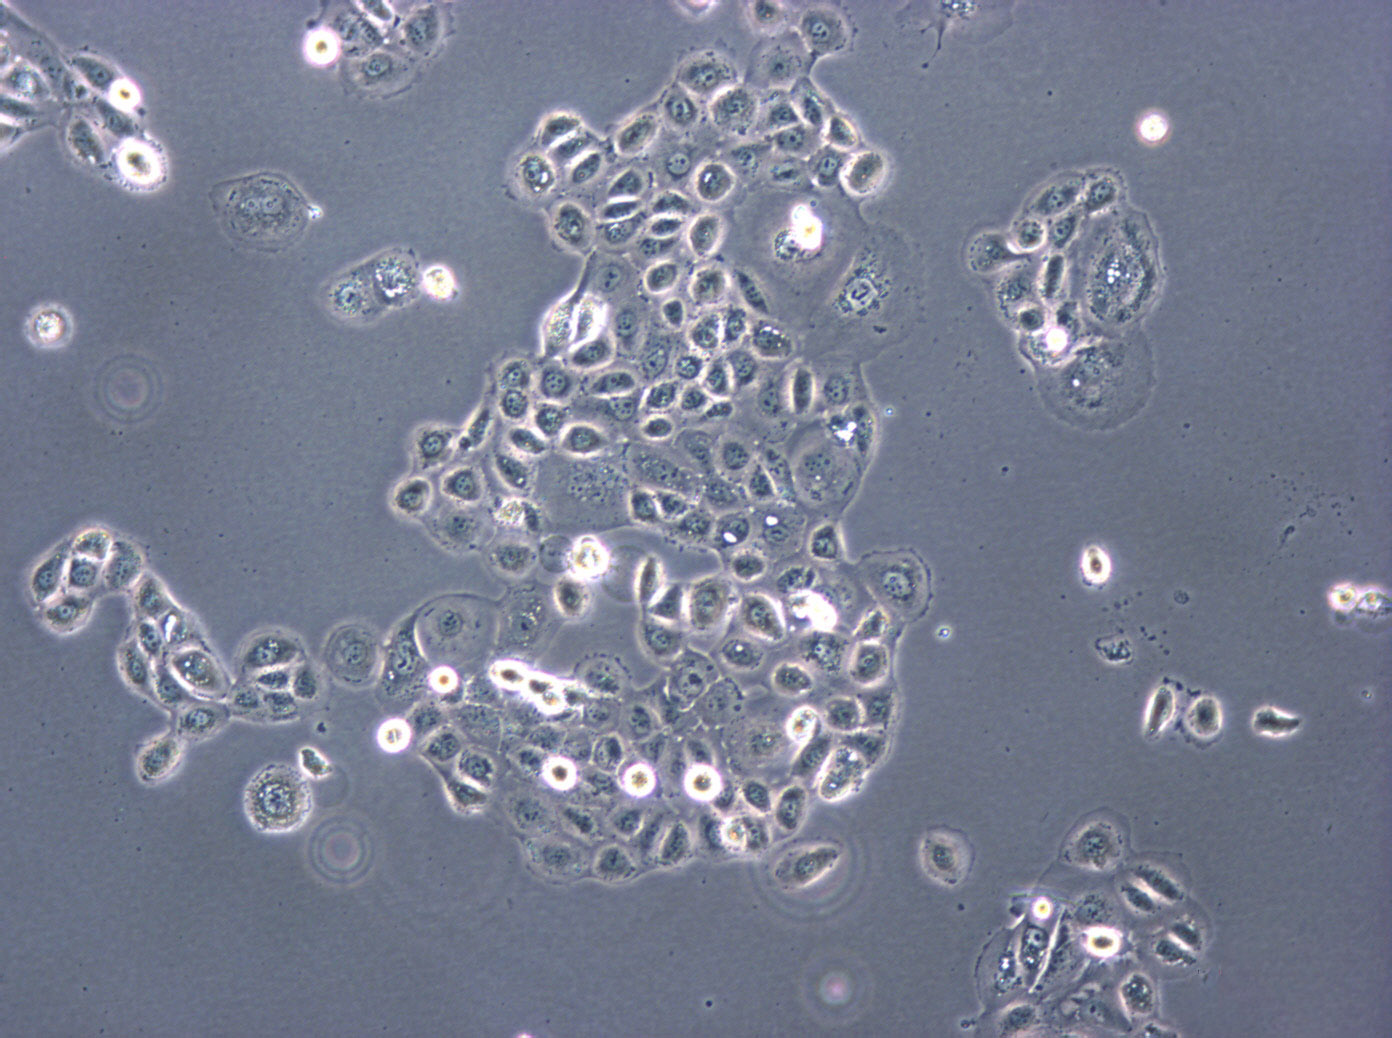 B16-F0 Cell:小鼠黑色素瘤细胞系,B16-F0 Cell